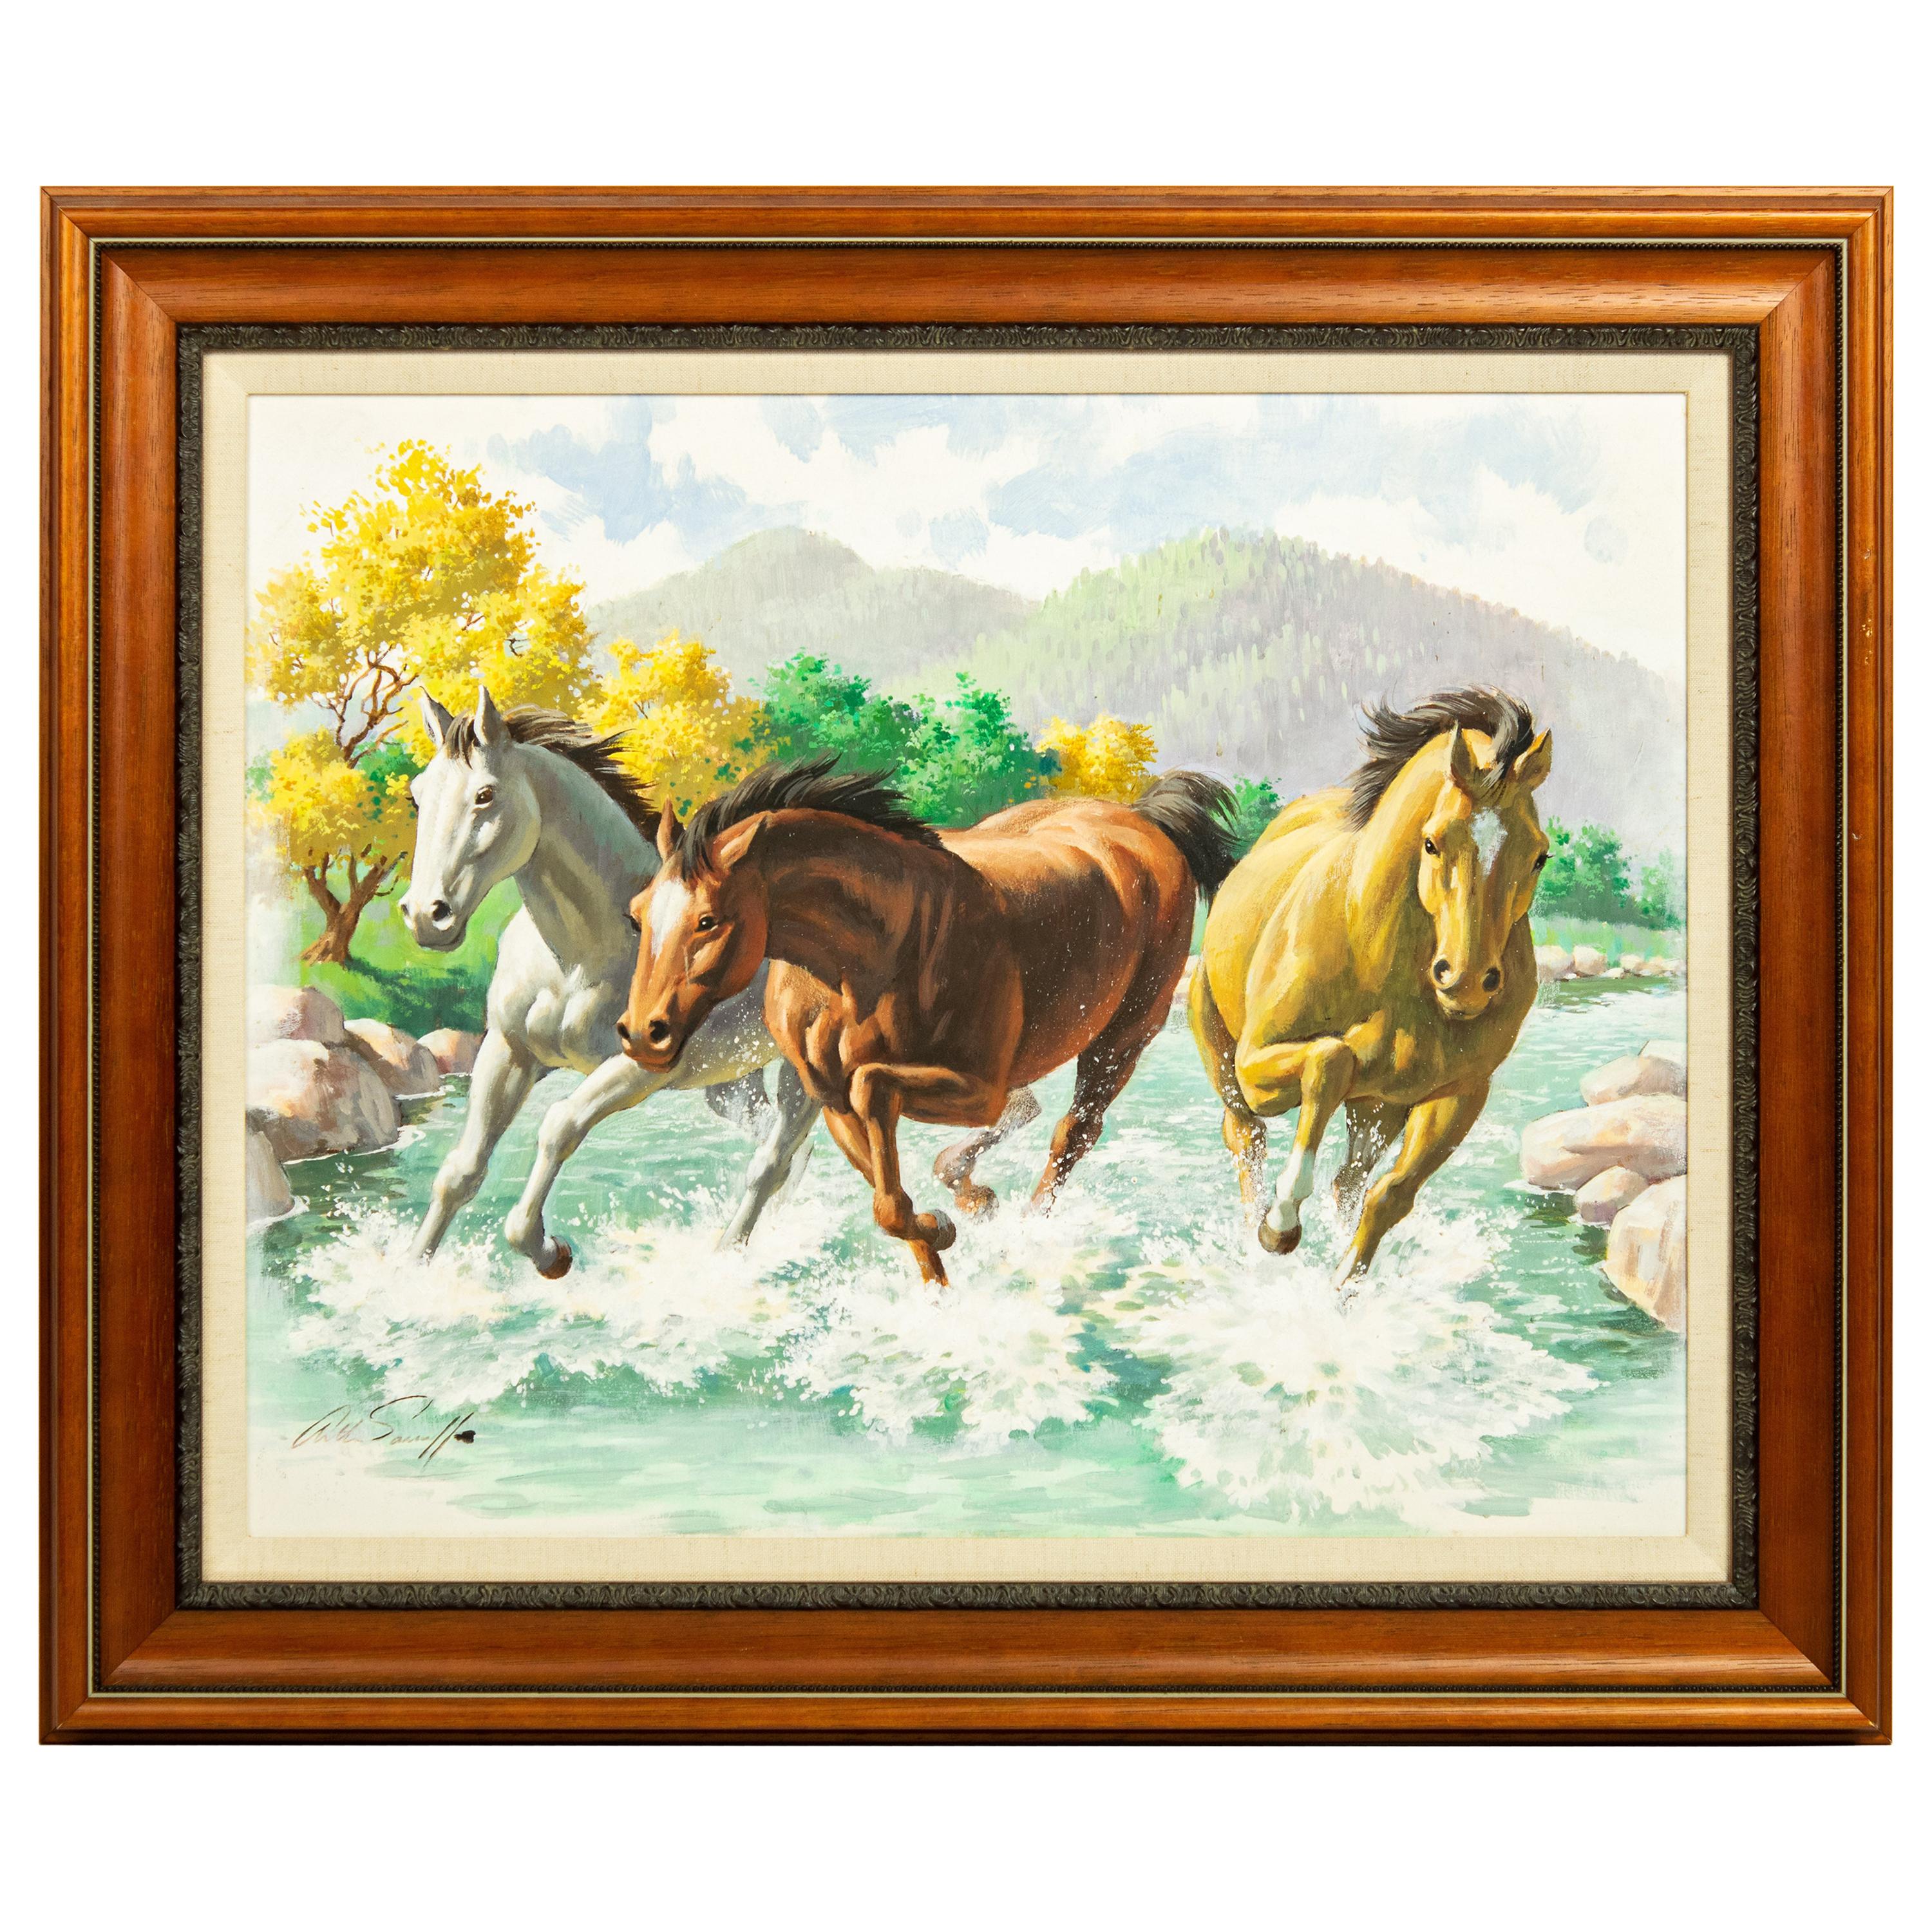 Peinture originale sur panneau d'Arthur Saron Sarnoff représentant des chevaux courant dans un ruisseau 